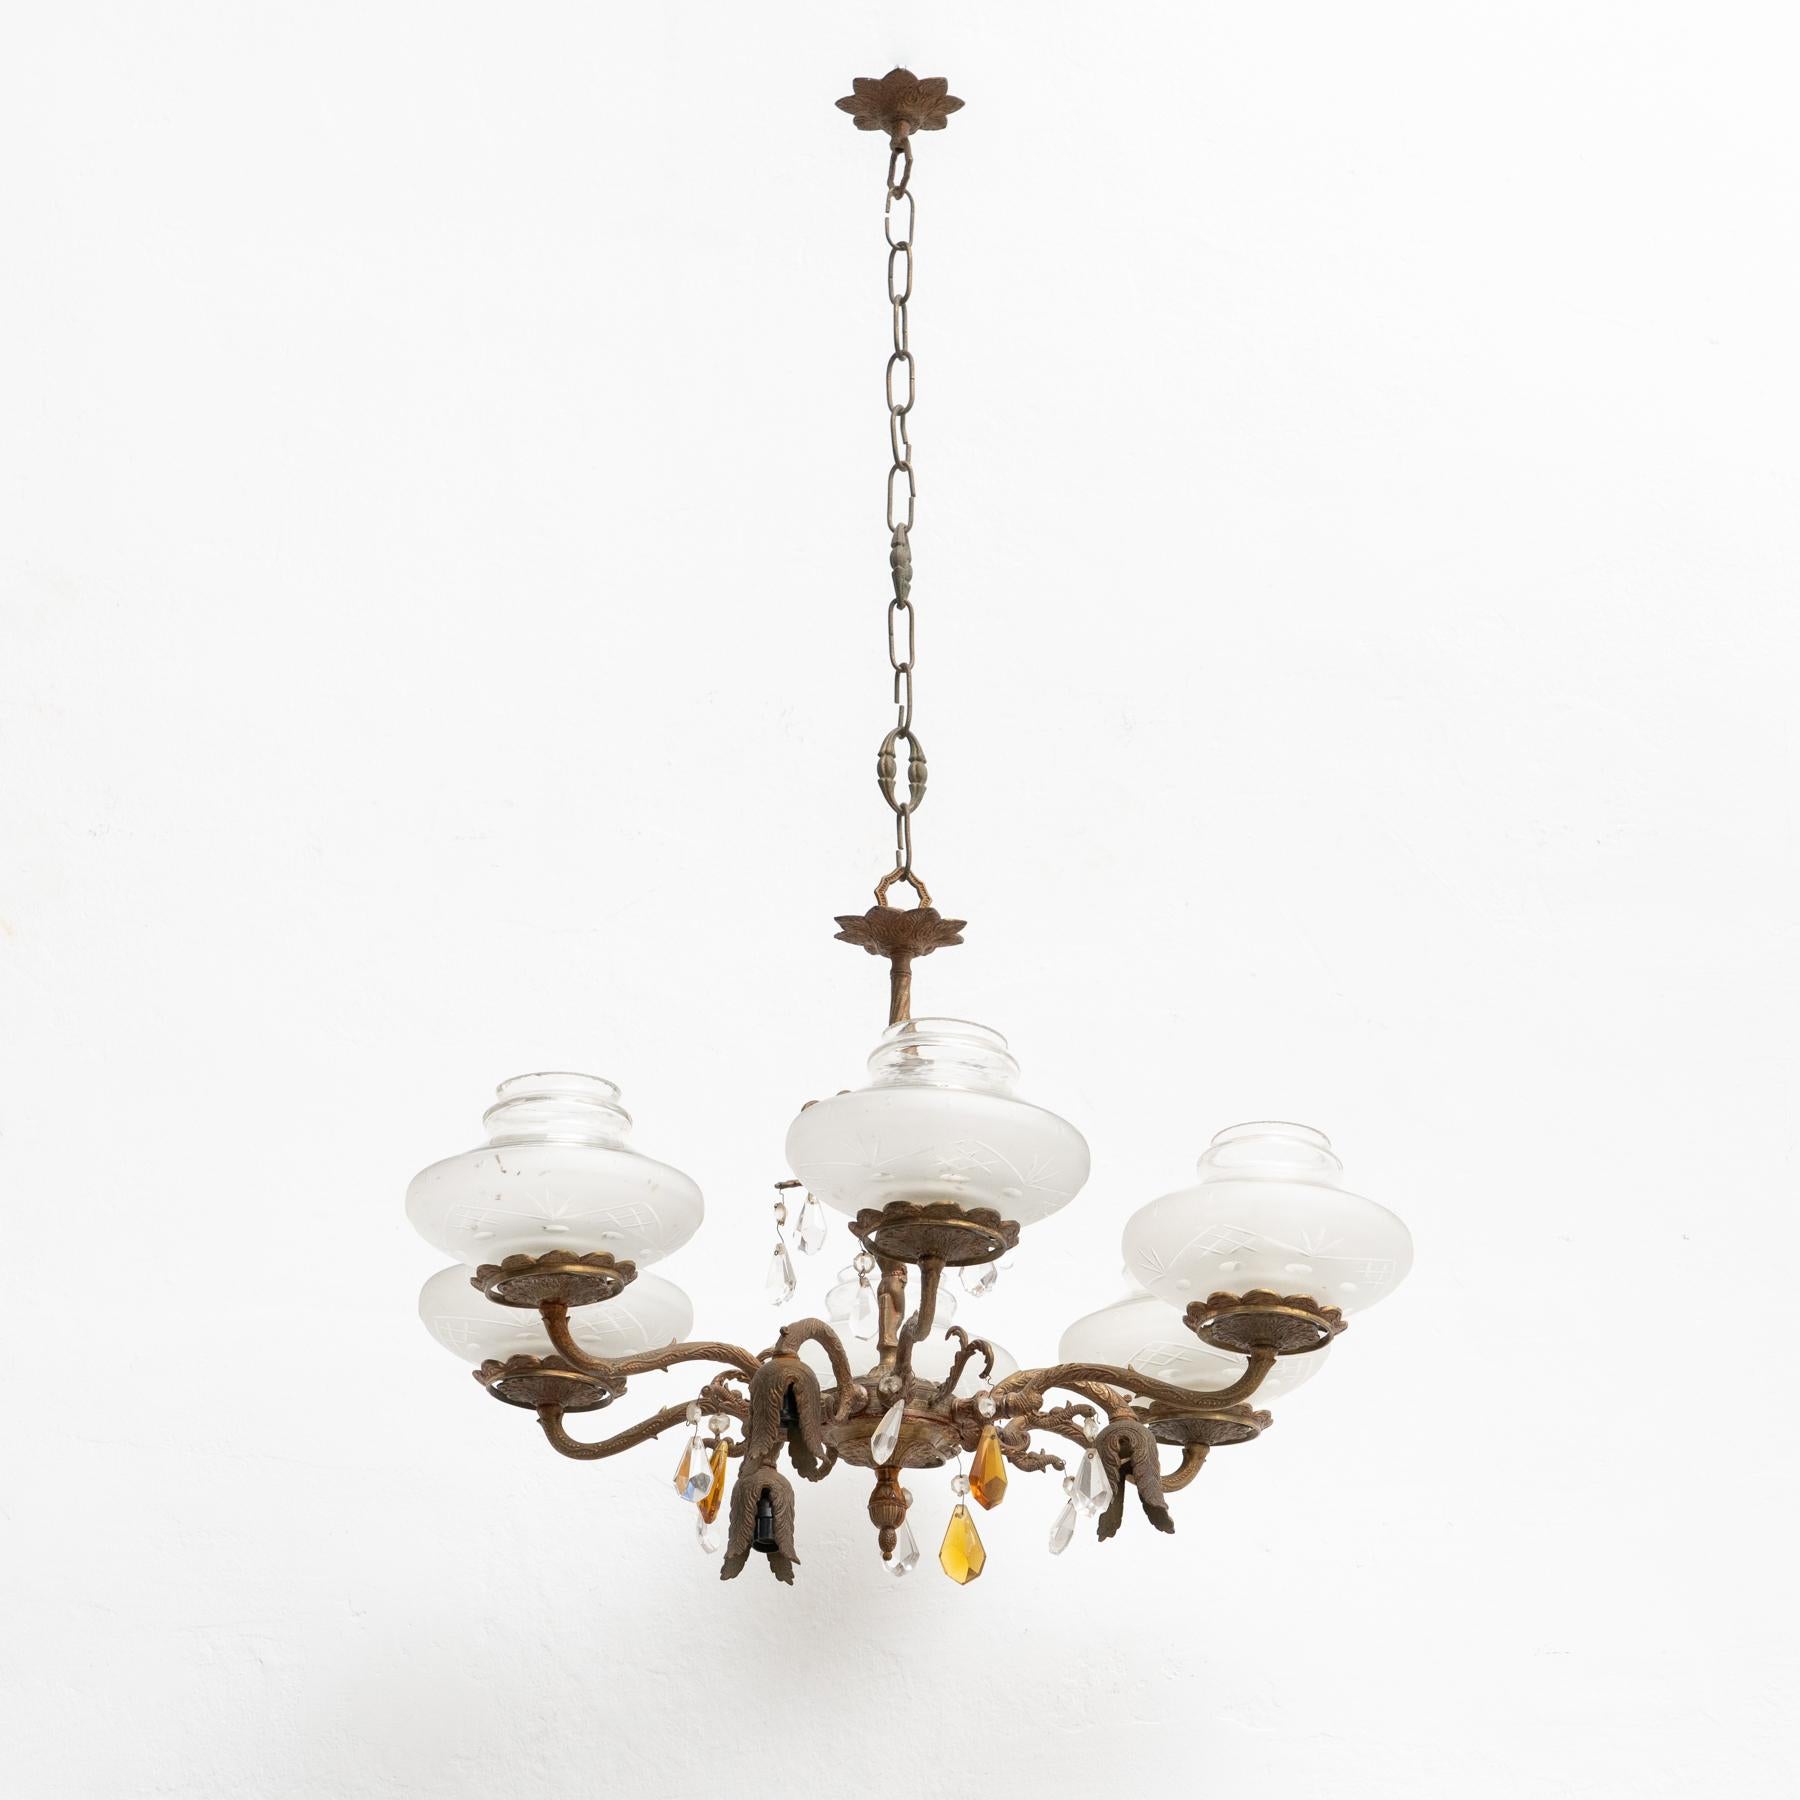 Antike Vintage-Spinnen-Deckenlampe. Hergestellt aus Bronze.

Hergestellt von einem unbekannten Hersteller in Frankreich, um 1940.

Originaler Zustand mit geringen alters- und gebrauchsbedingten Abnutzungserscheinungen, der eine schöne Patina